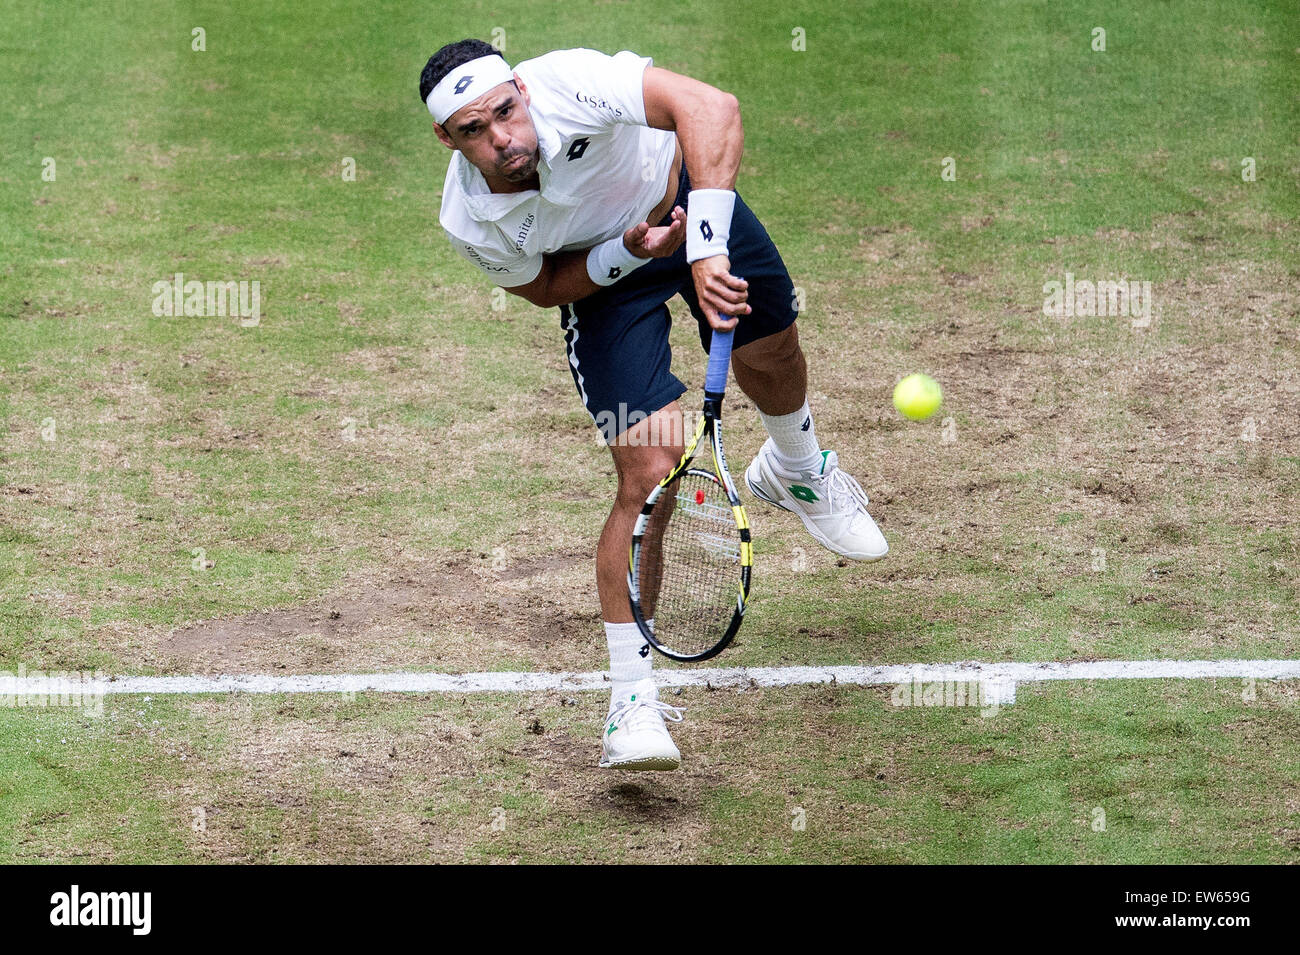 Halle, Allemagne. 18 Juin, 2015. Alejandro Falla de Colombie en action dans la ronde de 16 match contre Janowicz de Pologne pendant le tournoi de tennis de l'ATP à Halle, Allemagne, 18 juin 2015. Photo : MAJA HITIJ/dpa/Alamy Live News Banque D'Images